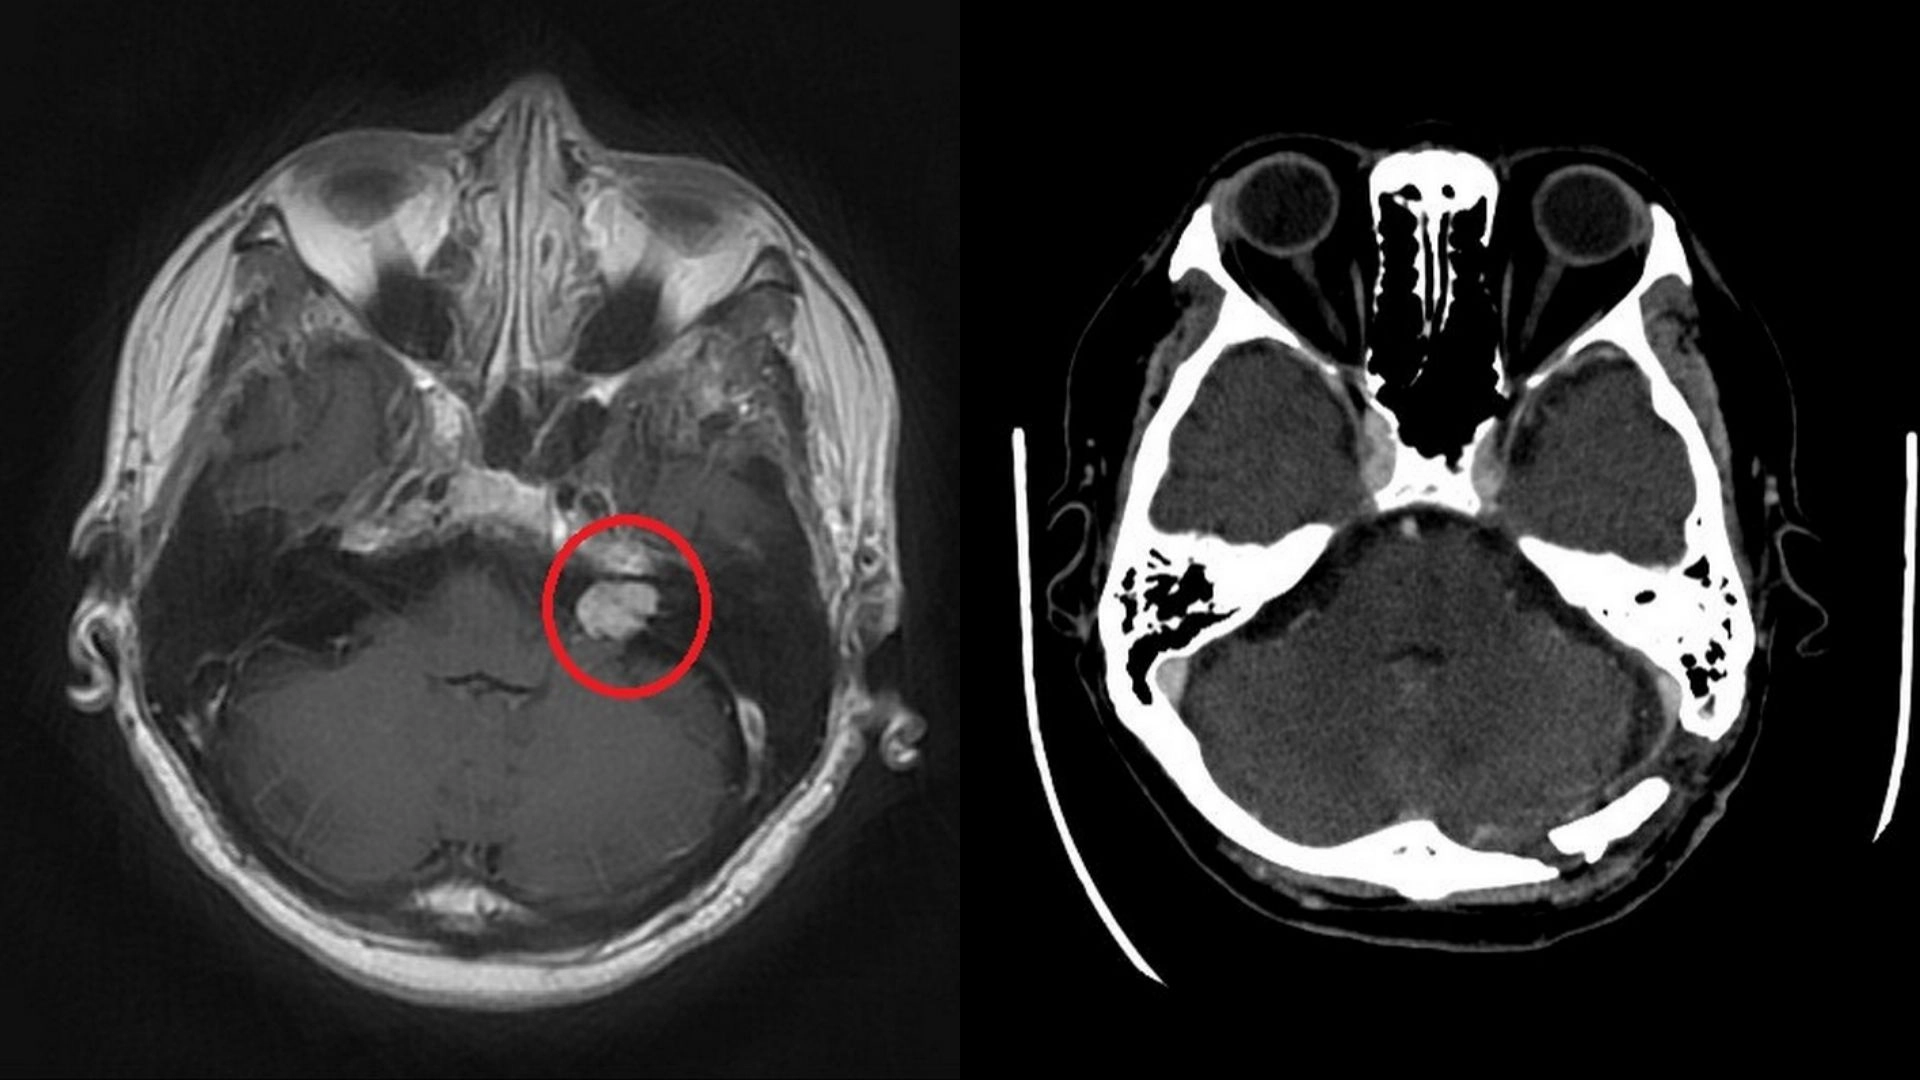 術前核磁共振顯示紅圈處有一小於2公分大的腫瘤(左)；術後電腦斷層可以確認腫瘤已完整取出(右)。